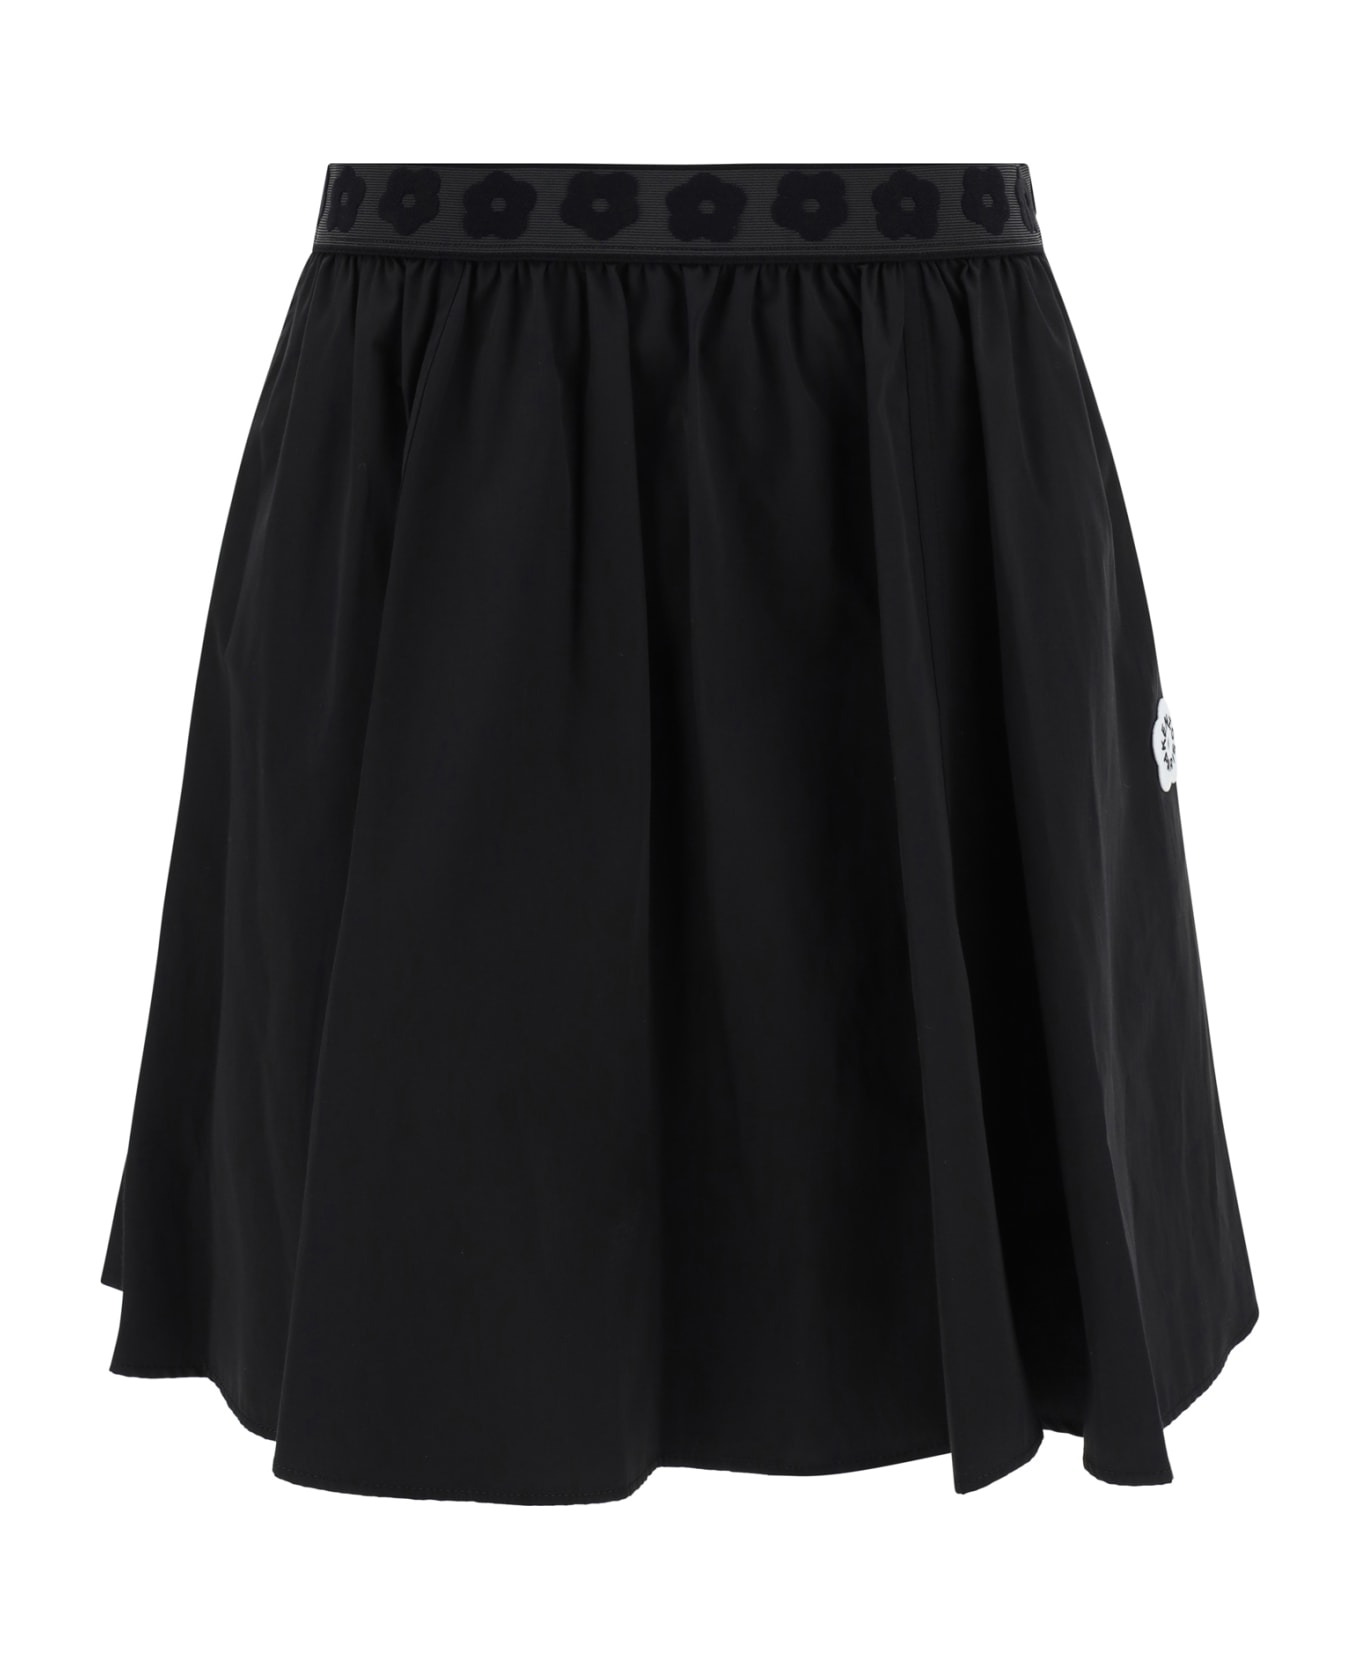 Kenzo Skirt - Black